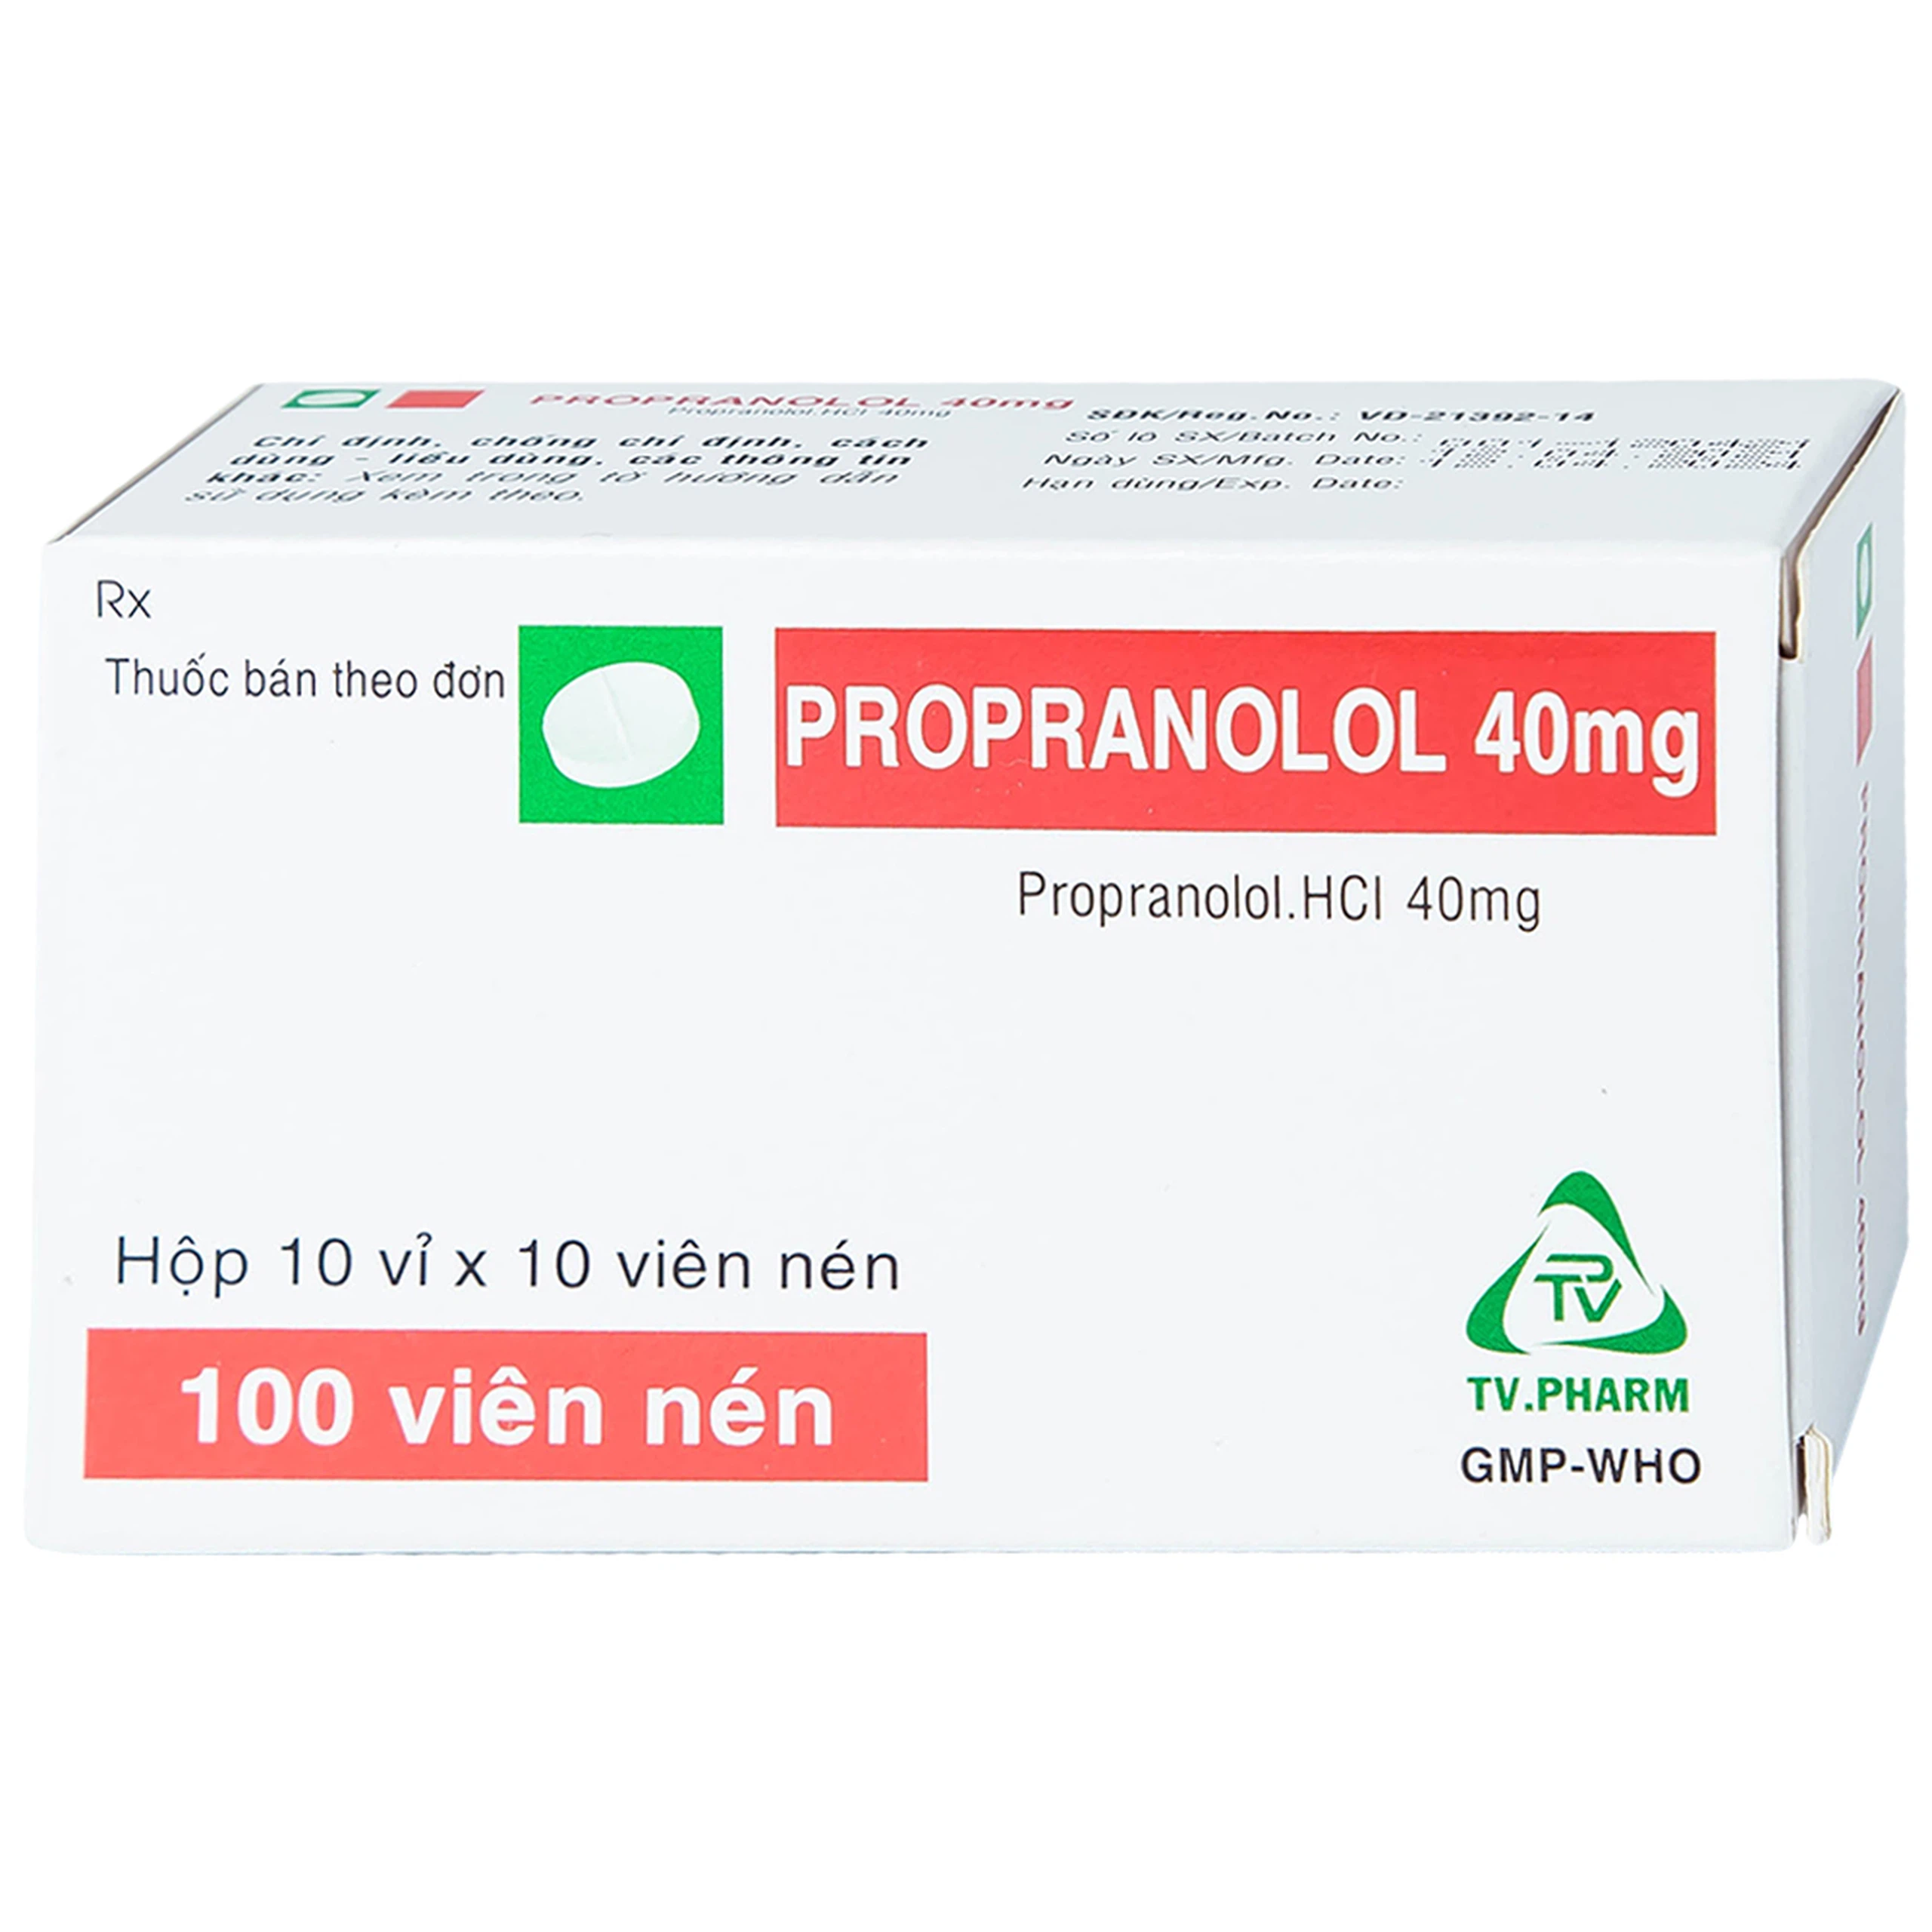 Thuốc Propranolol 40mg TV.Pharm điều trị tăng huyết áp, đau thắt ngực (10 vỉ x 10 viên)